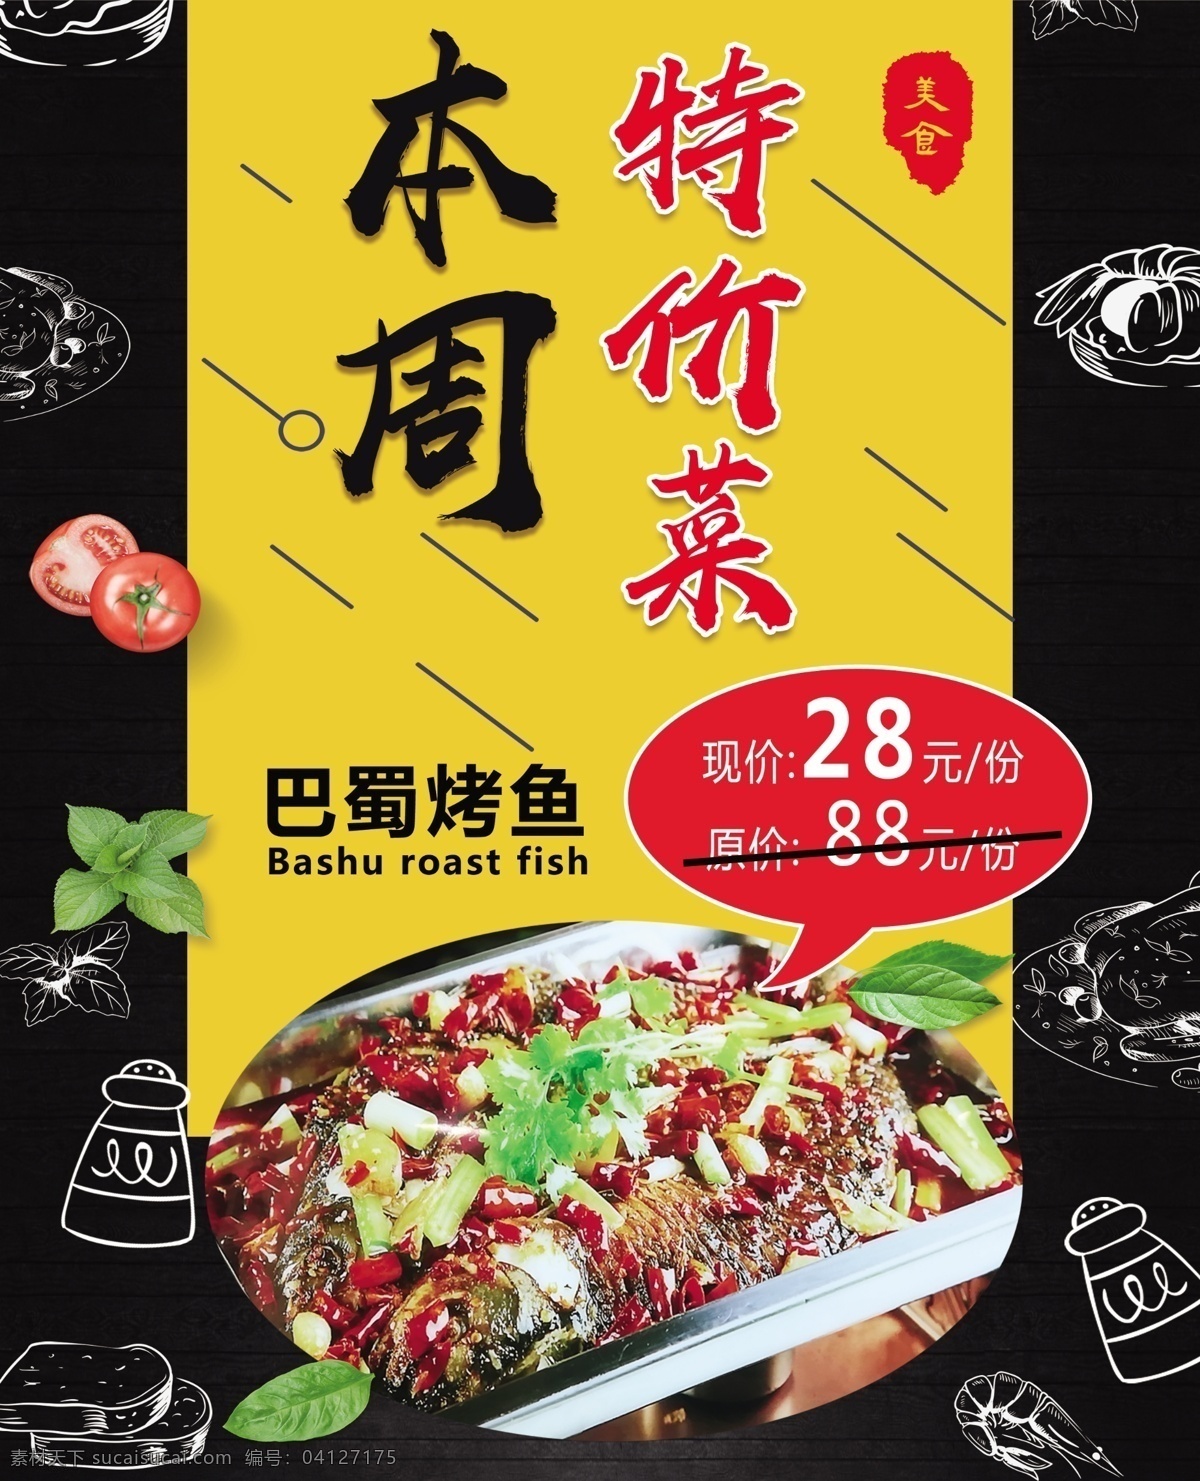 特价菜图片 特价菜 巴蜀烤鱼 28元 美味 美食 分层